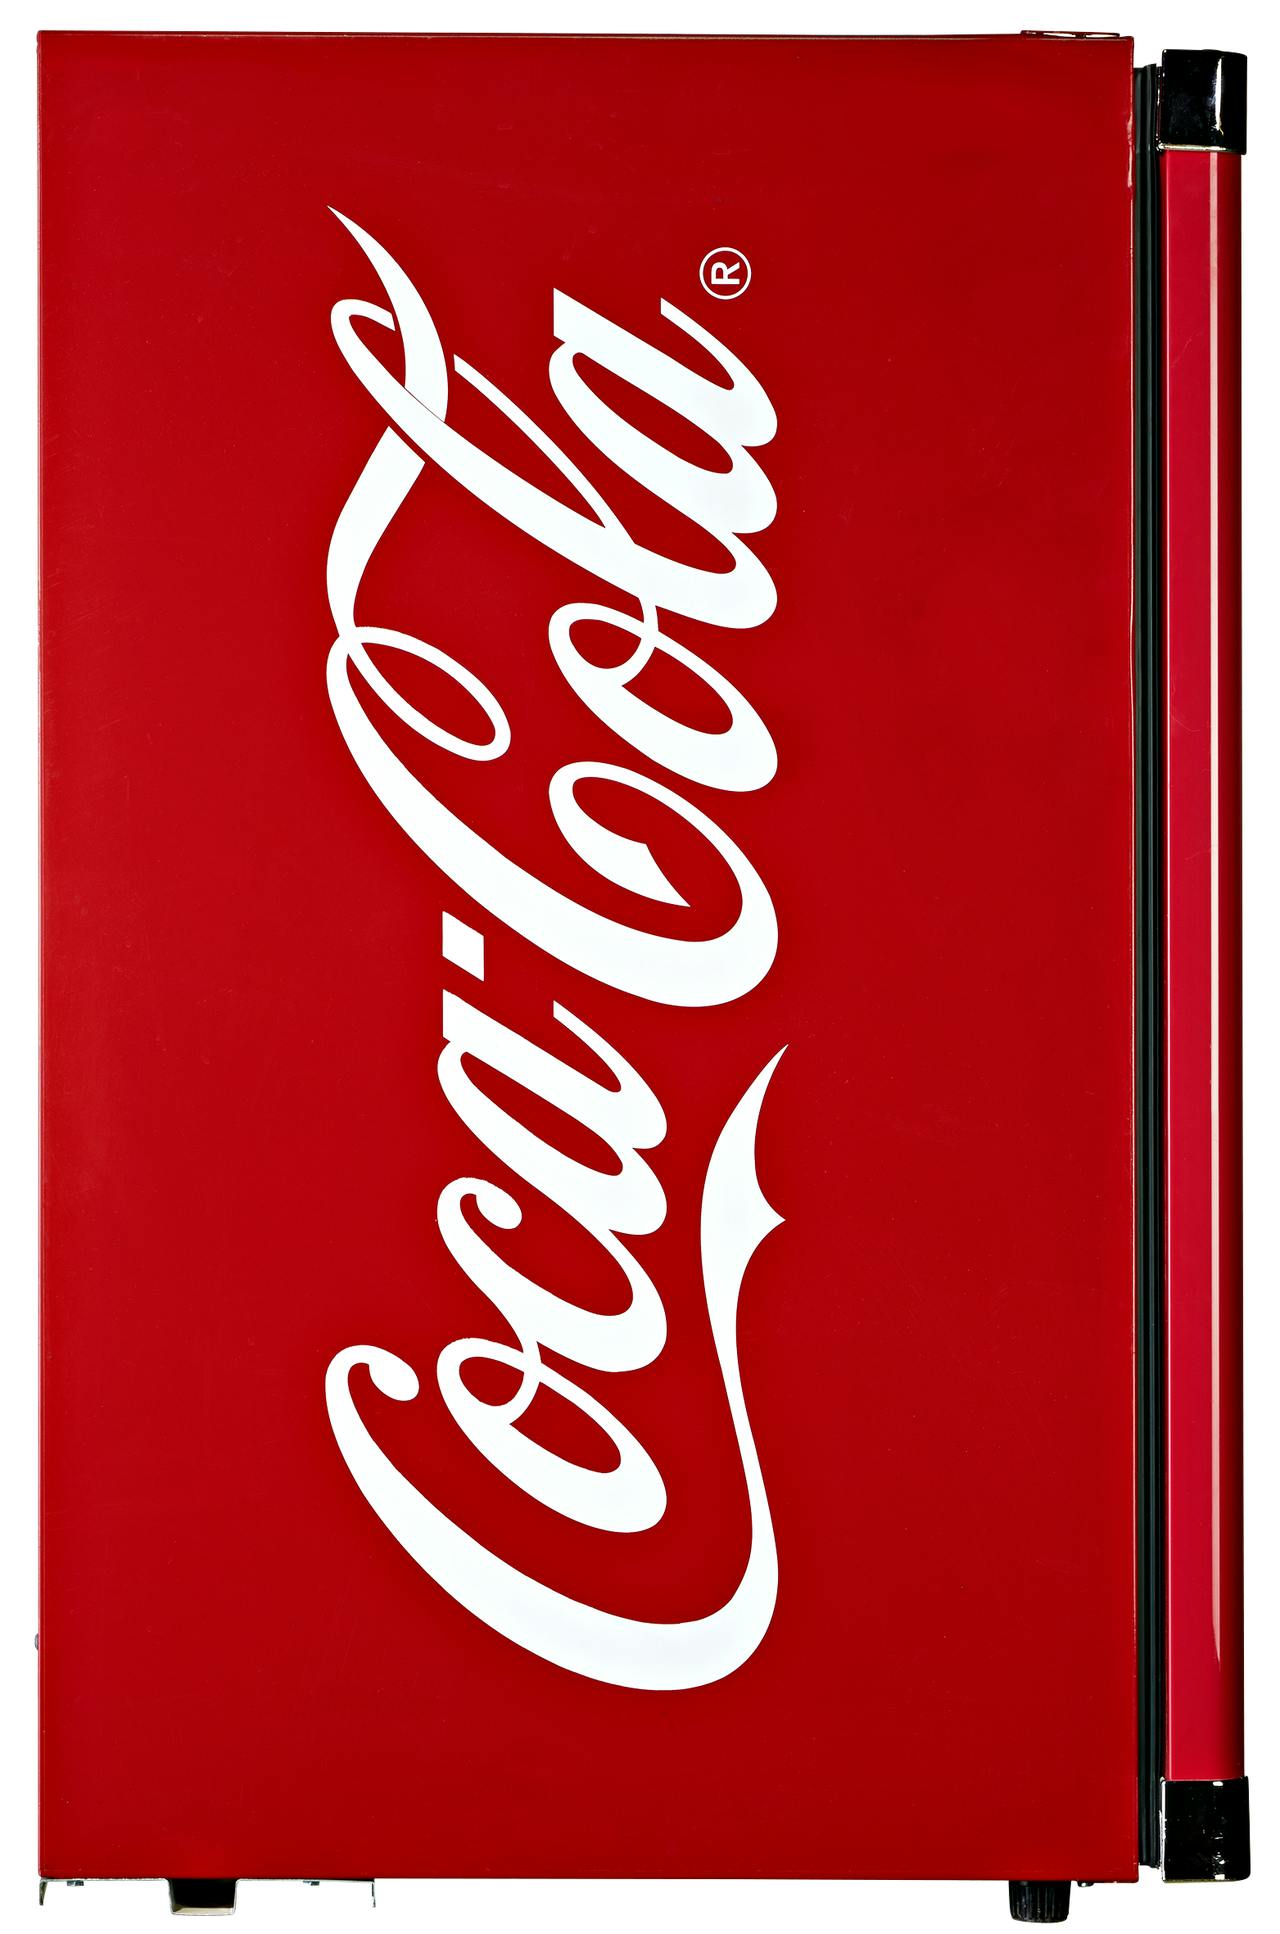 CUBES Kühlschrank CUBES CC 166 Coca Cola - 54,5 x 56 x 83,5 cm